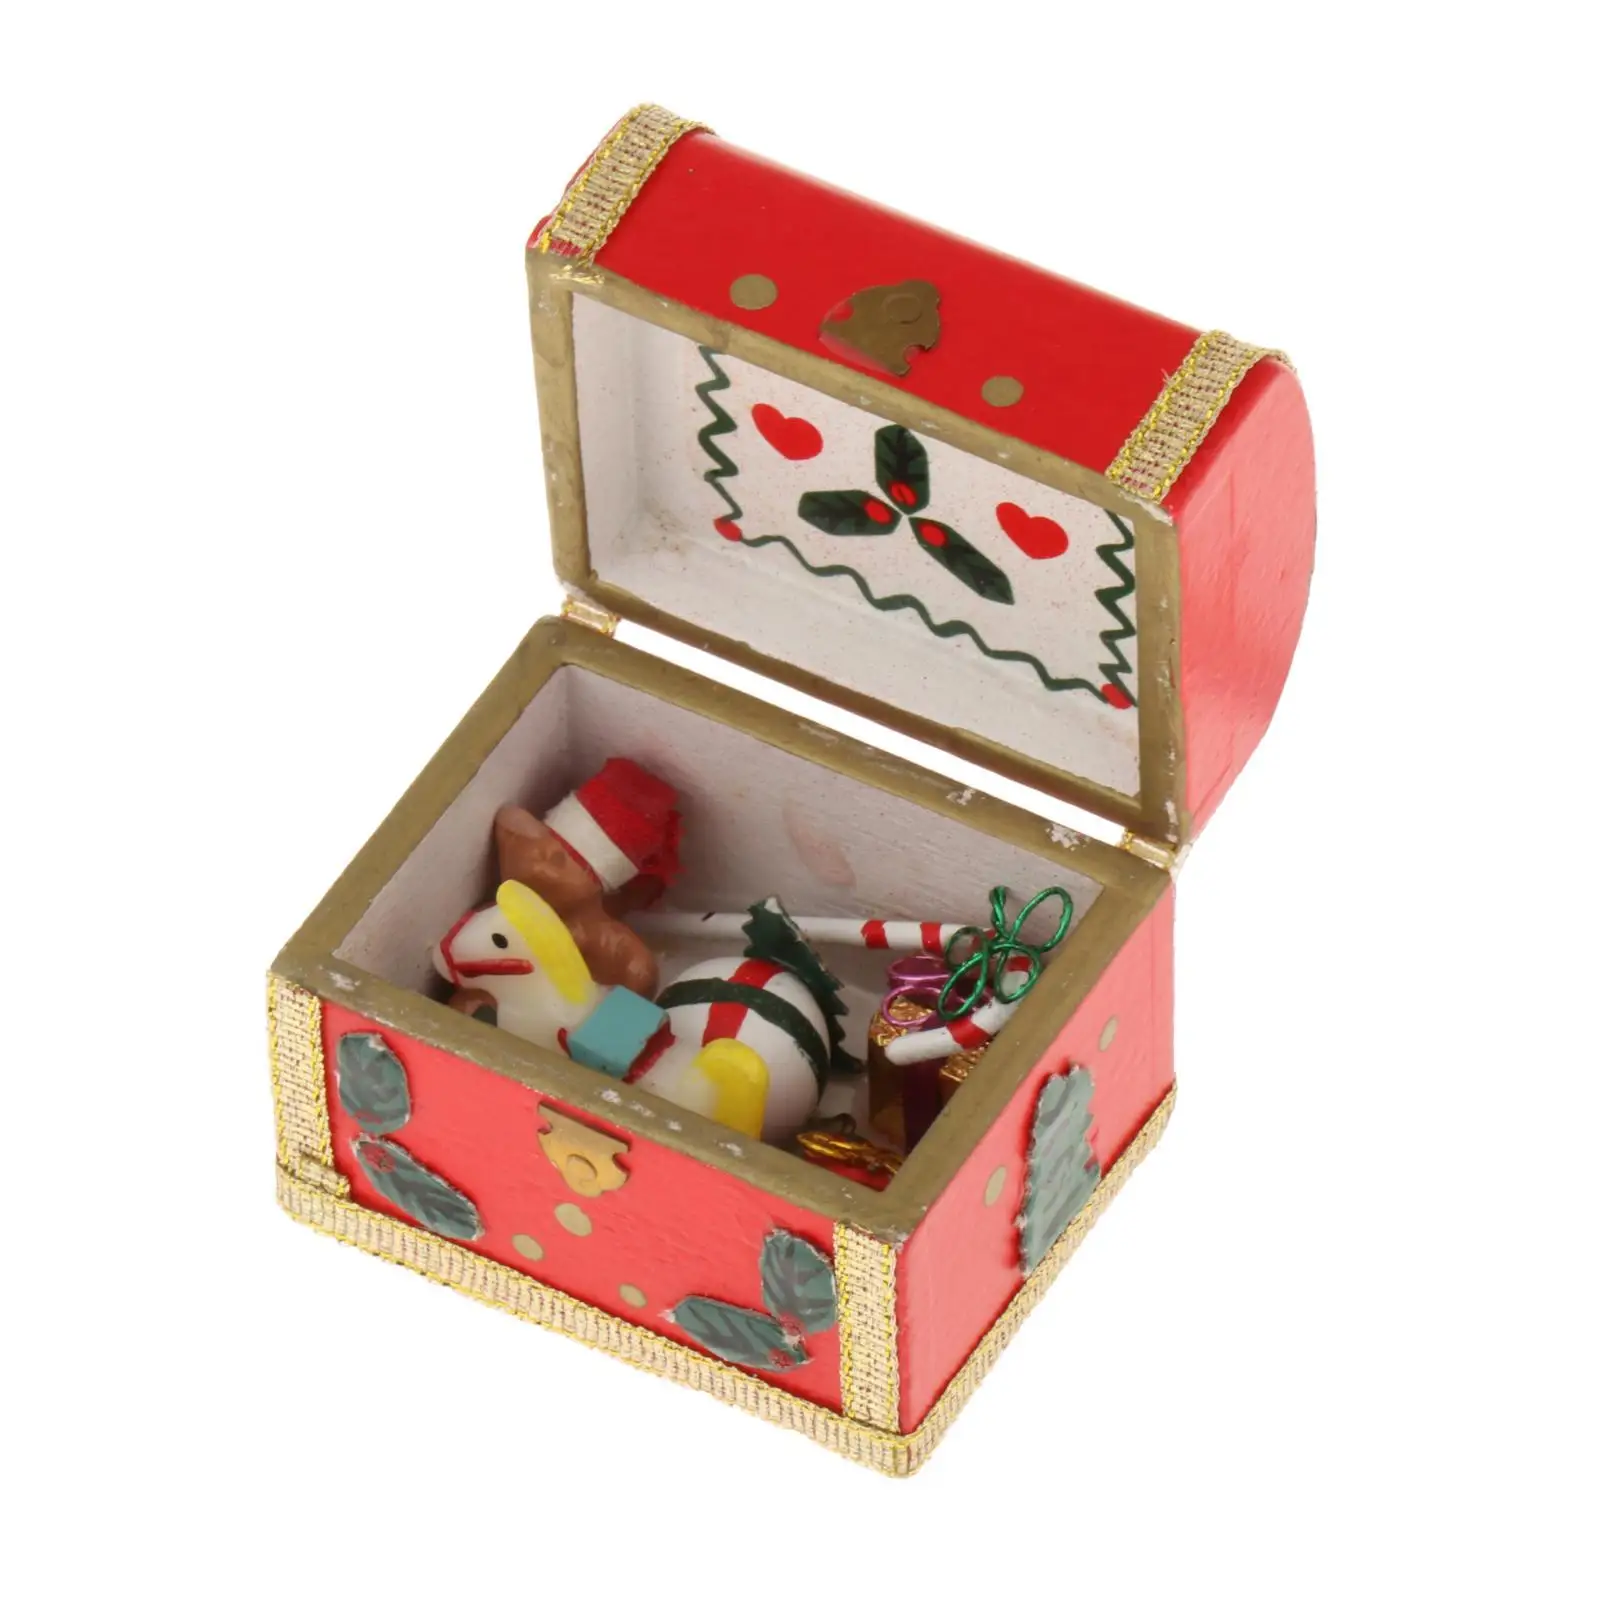 Christmas 1:12 Scale Miniature Treasure Chest Dollhouse Accessories for Scene Micro Landscape Photo Props Decoration